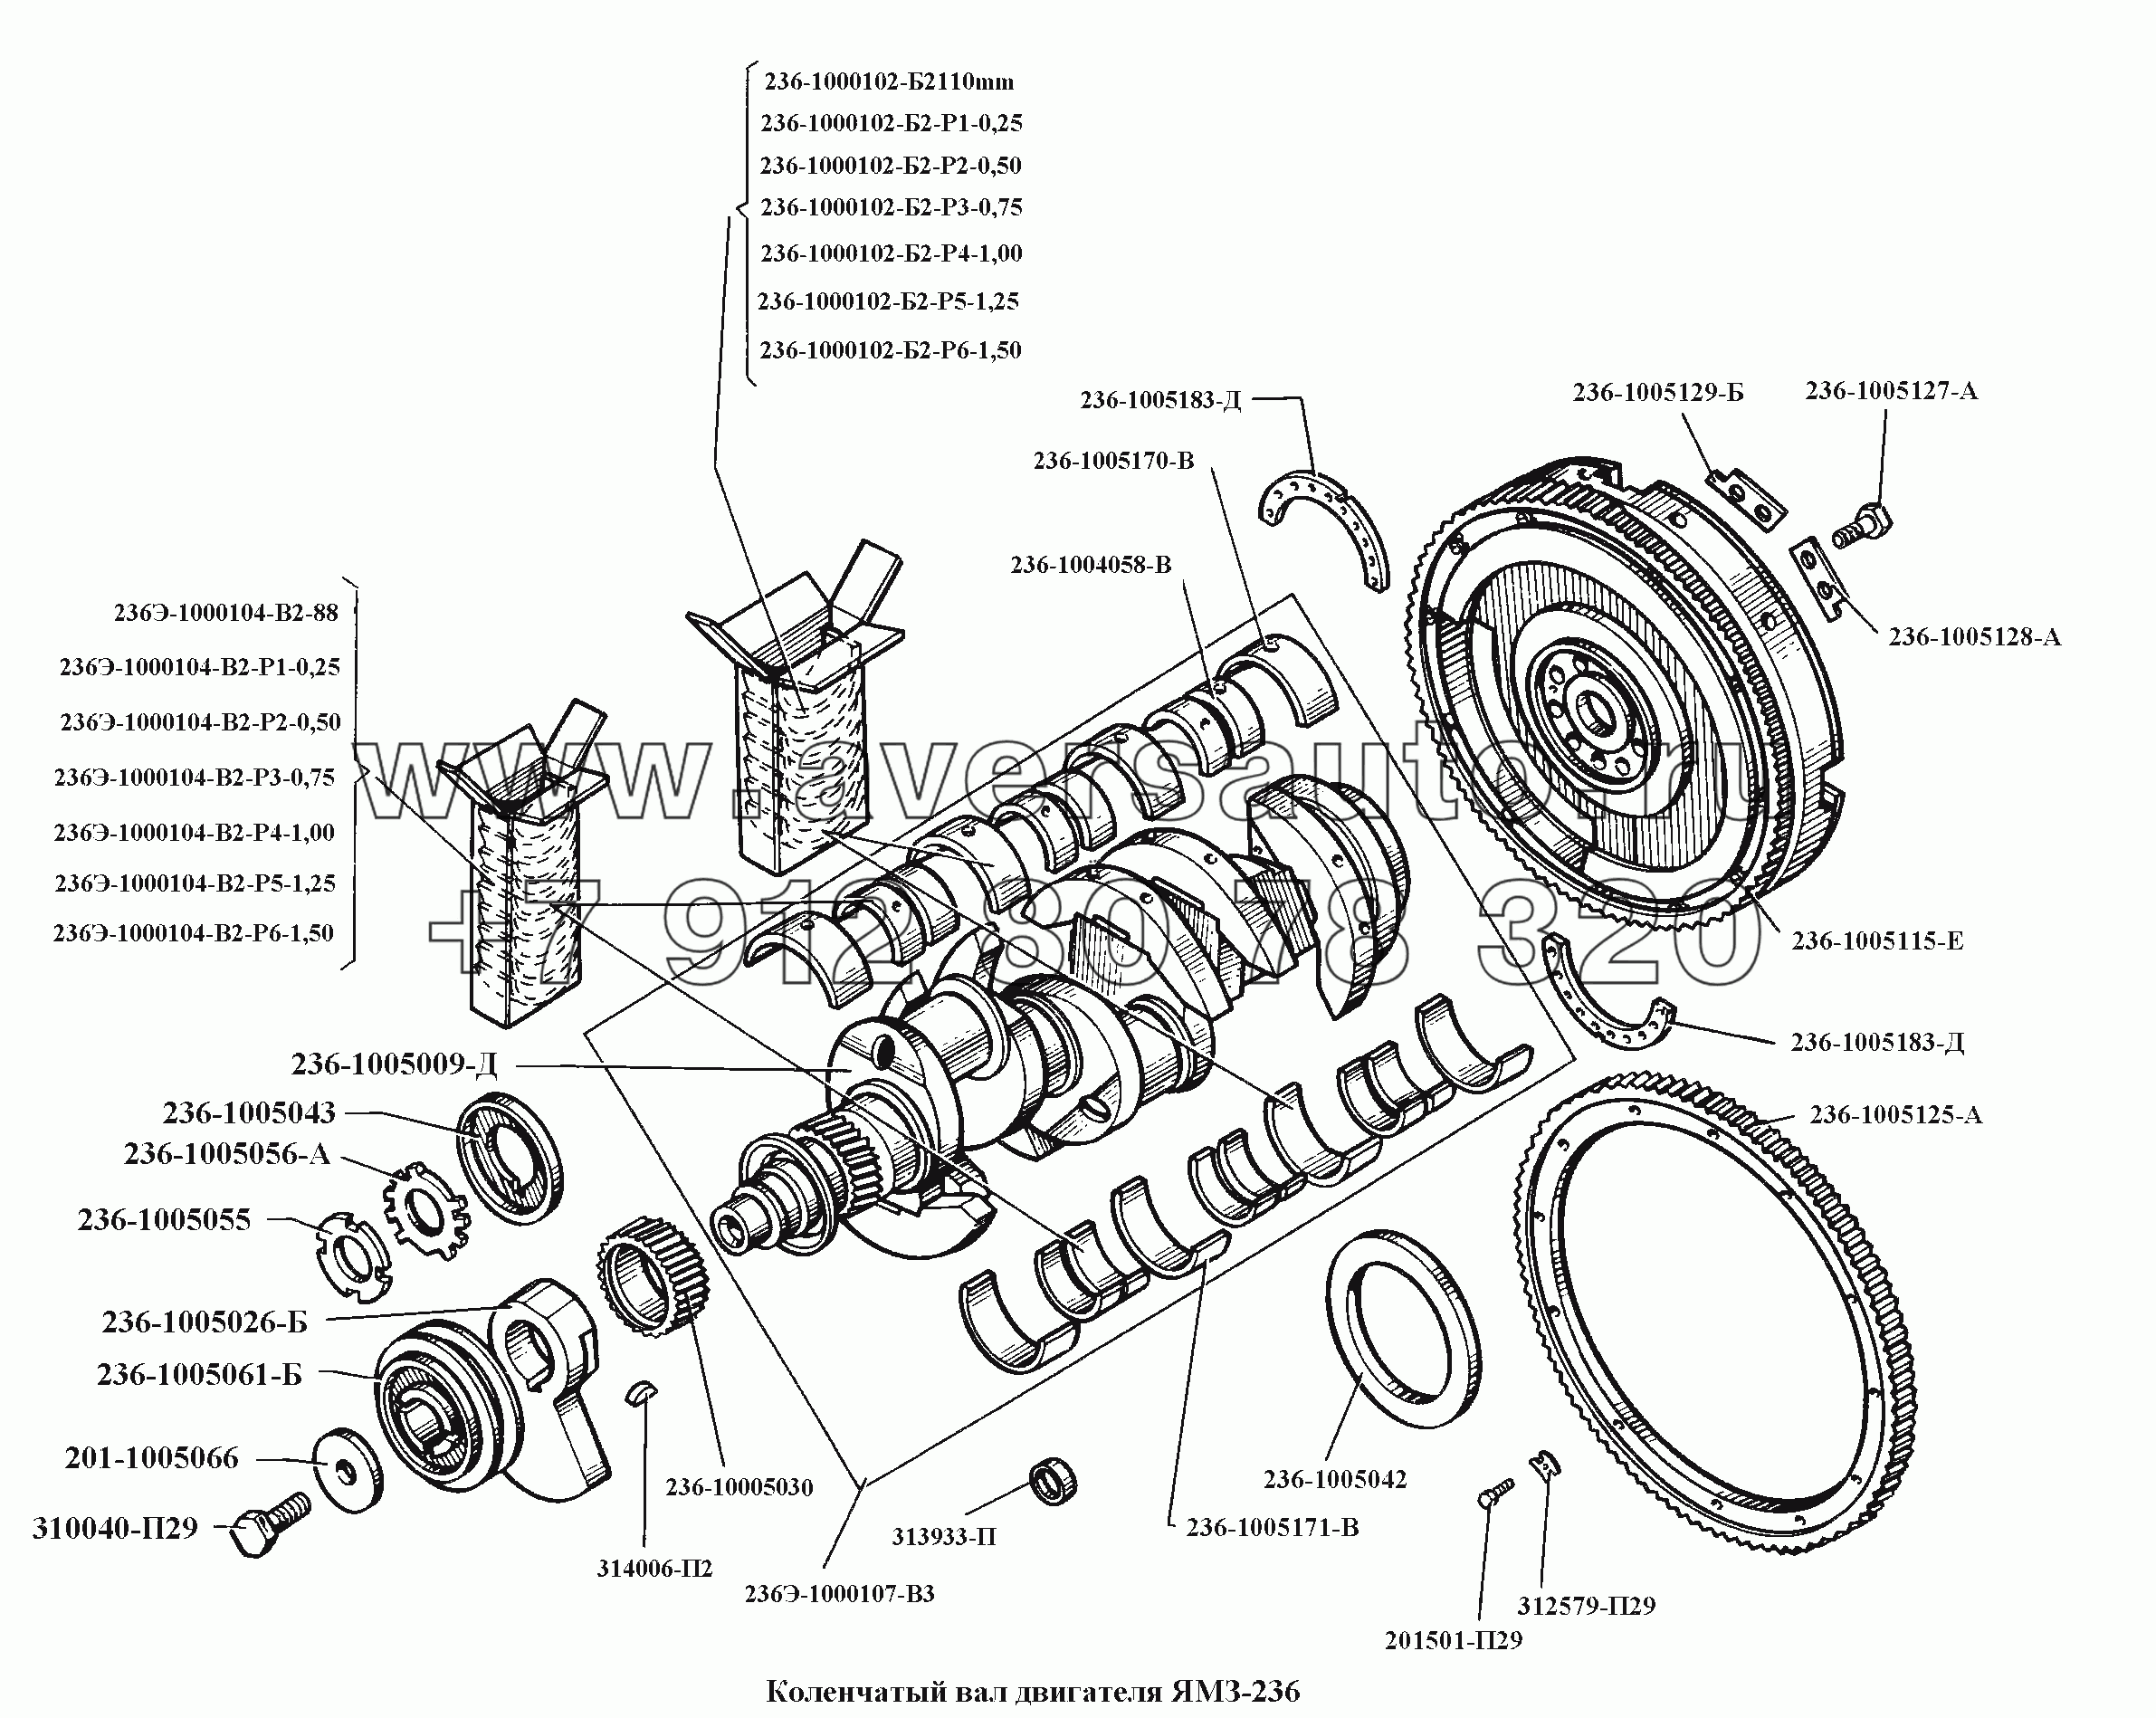 Коленчатый вал двигателя ЯМЗ-236